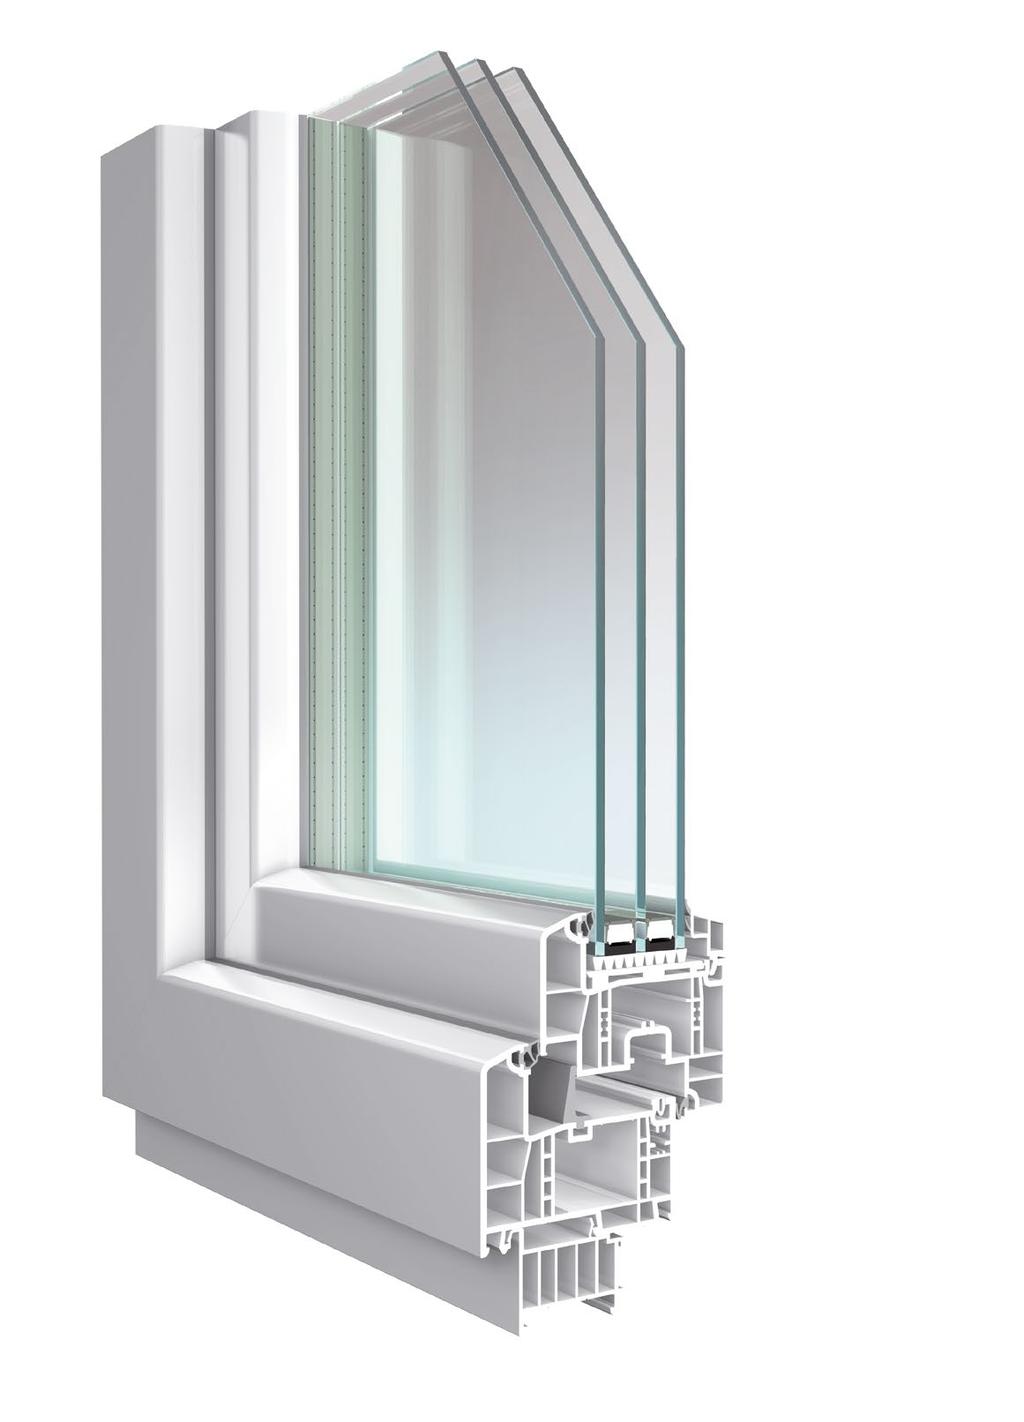 Soleo das neue HÖHBAUER Kunststoff-Fenster ist einzigartig und hoch innovativ.